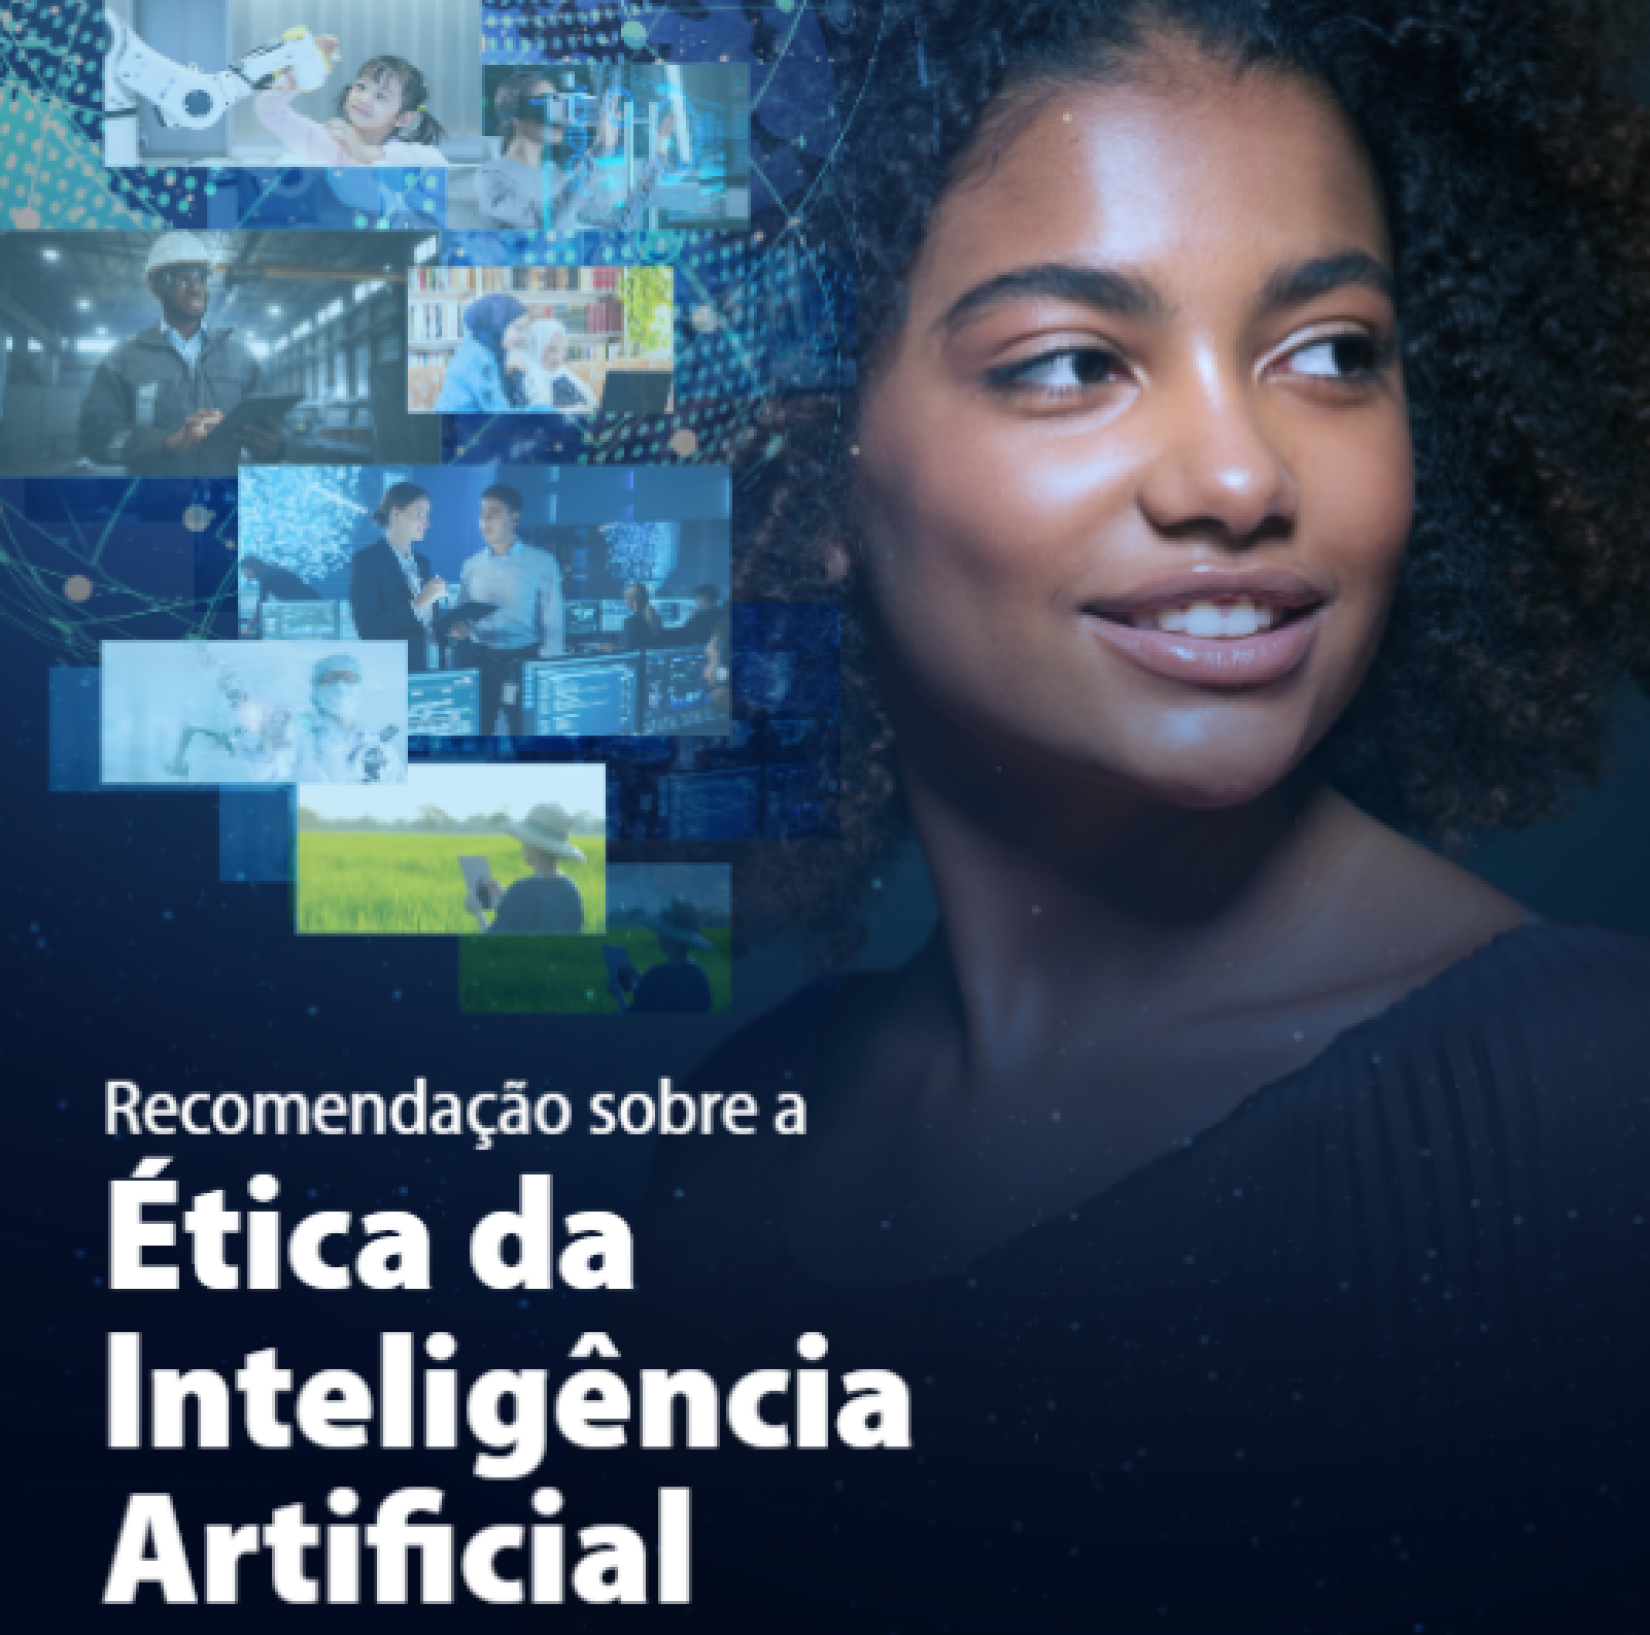 Lançamento da versão em português da Recomendação Internacional da UNESCO sobre Ética da Inteligência Artificial ocorreu nesta quarta-feira (11).